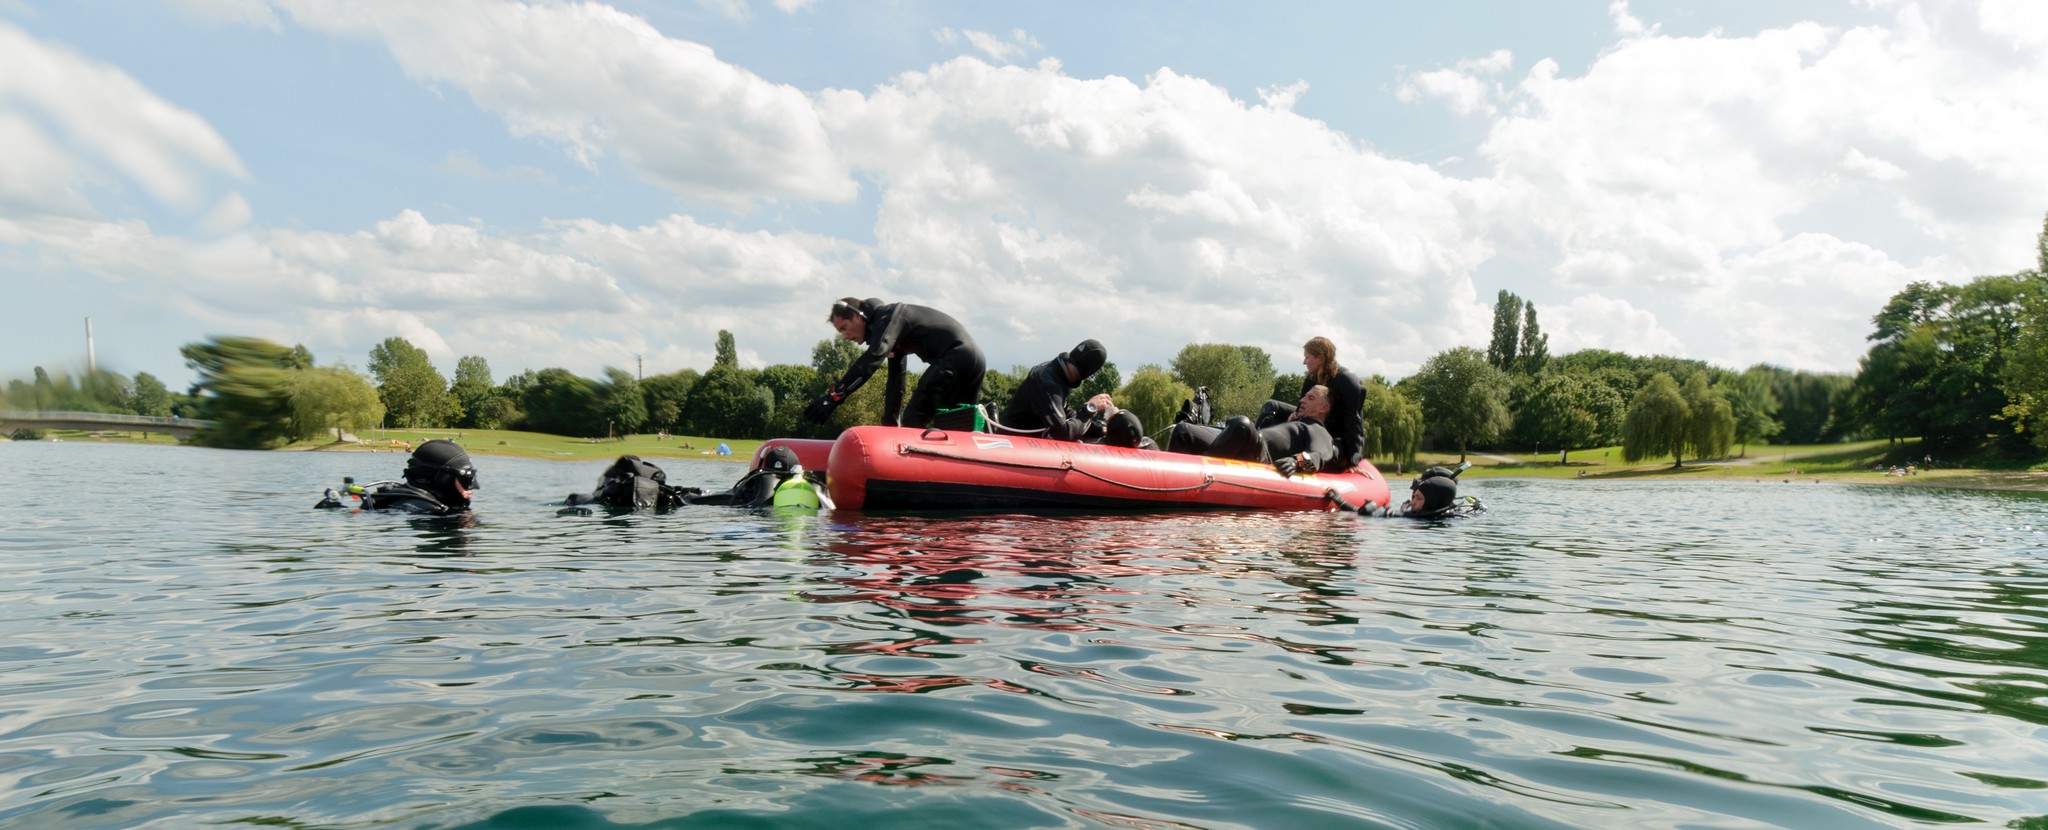 Vue habituelle en août dernier sur le lac Fühlinger près de Cologne : Andy, Tim, Thomas et l'équipe NBF de l'EAC dans un exercice de sauvetage (Credit : ESA)